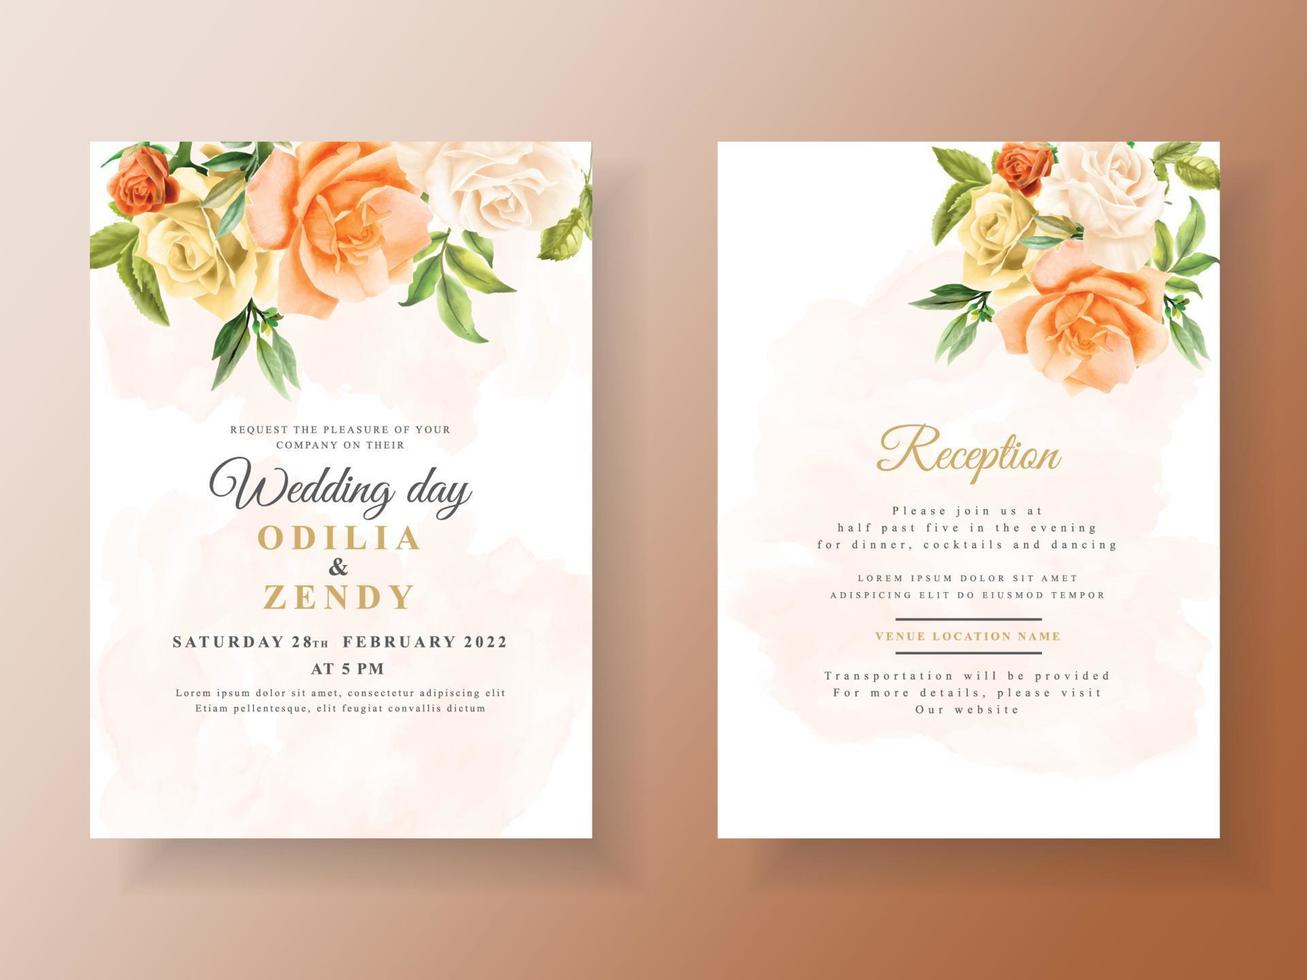 mooie oranje bloem bruiloft uitnodigingskaart vector